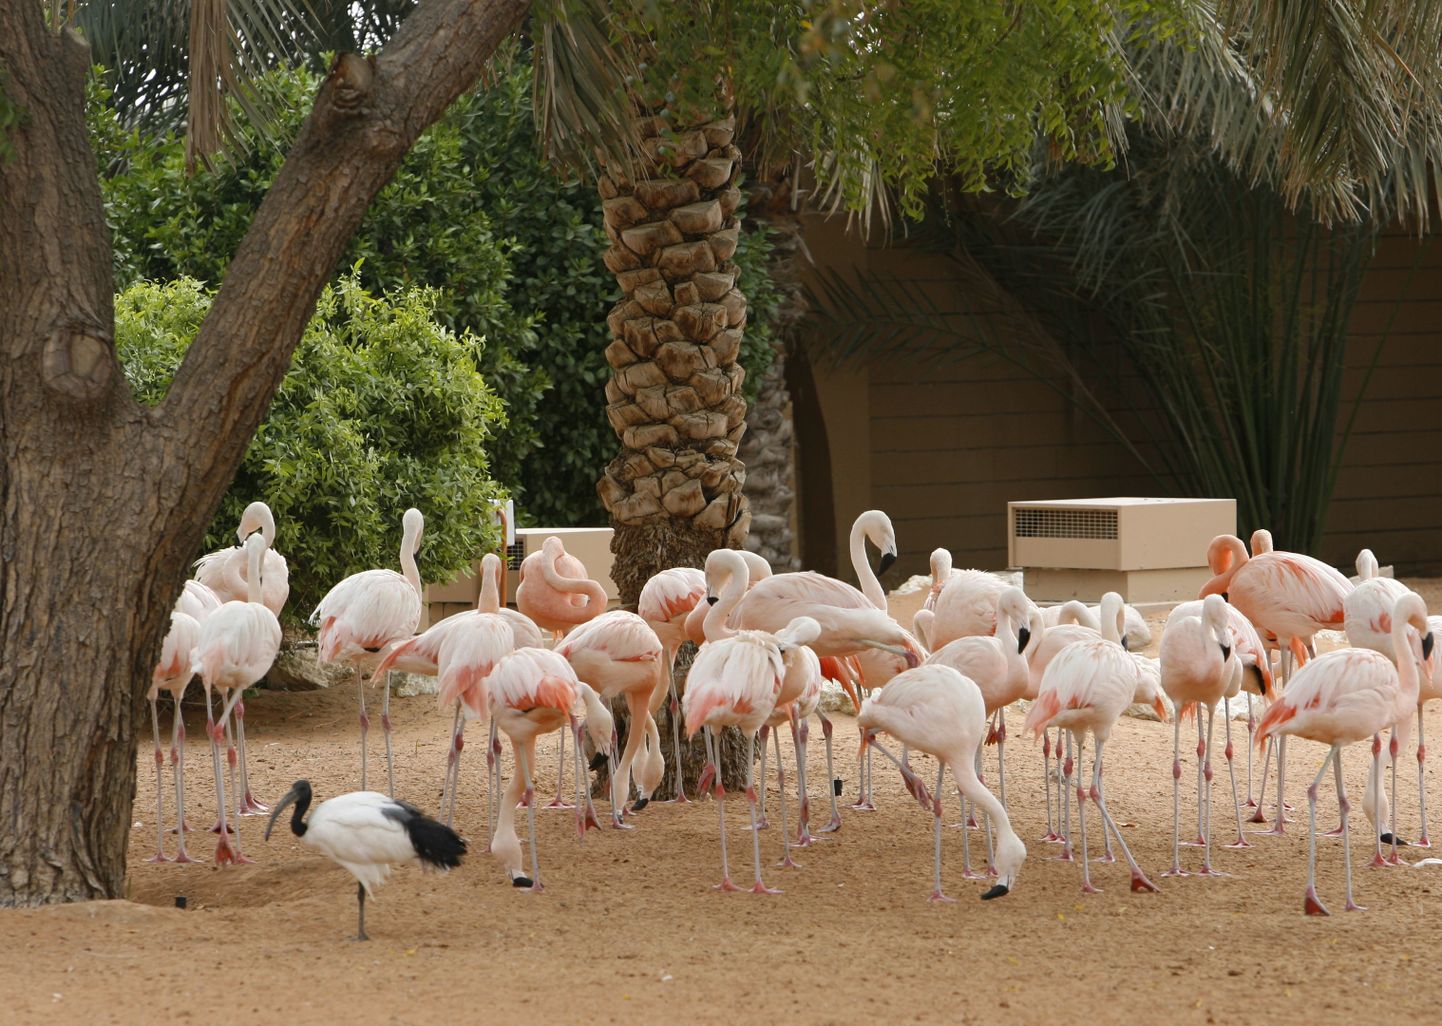 Flamingod. Pildil olevad linnud pole juhtumiga seotud